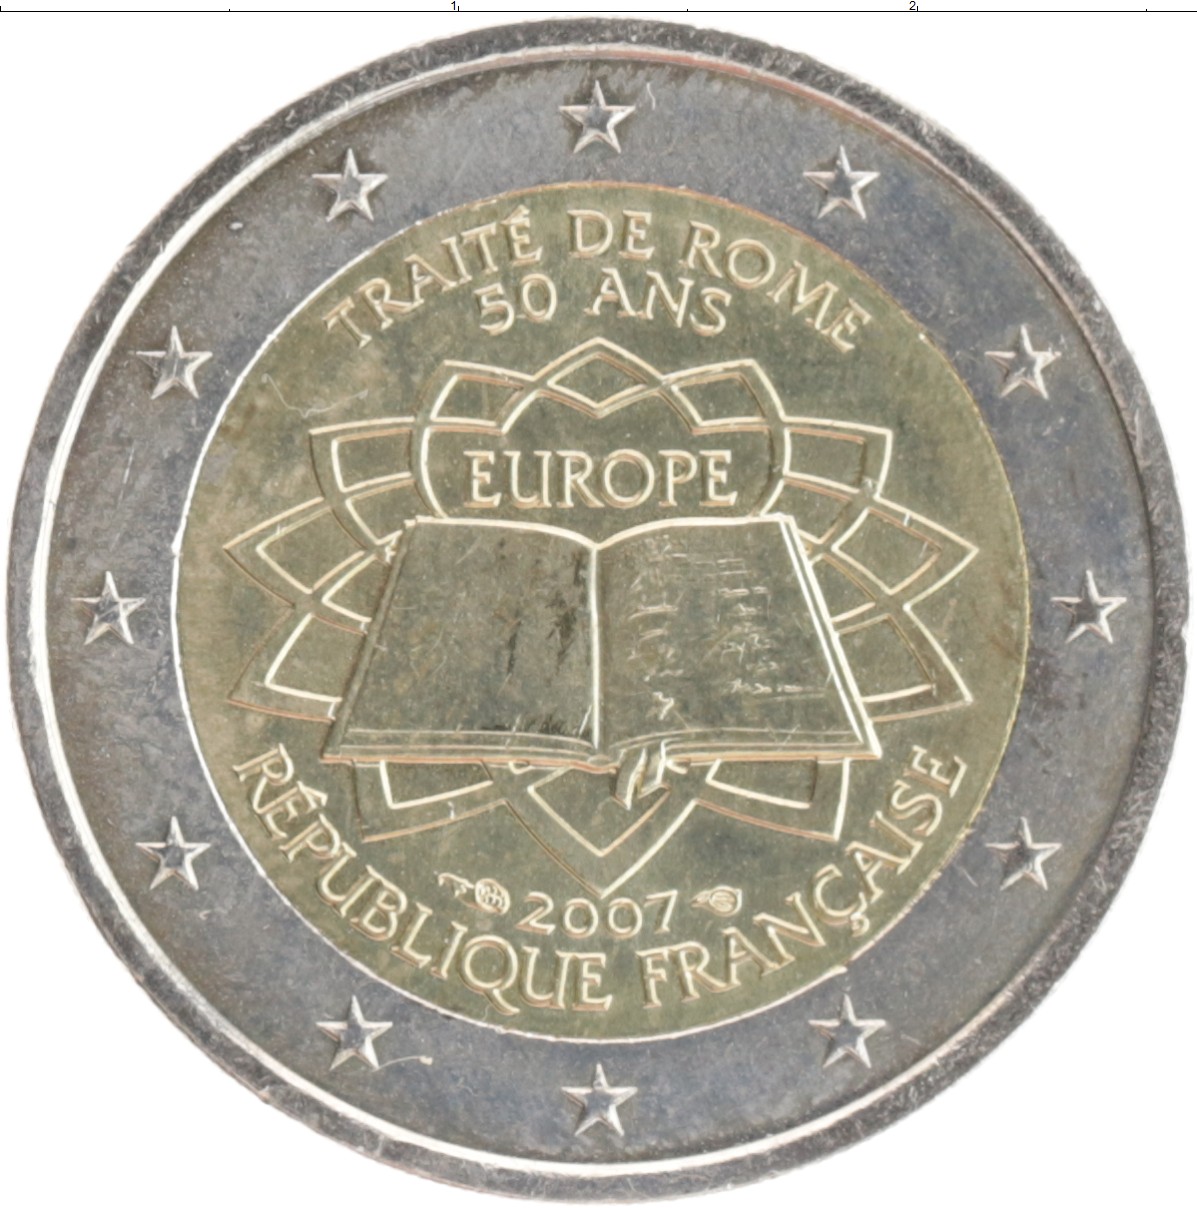 монеты евро нидерланды